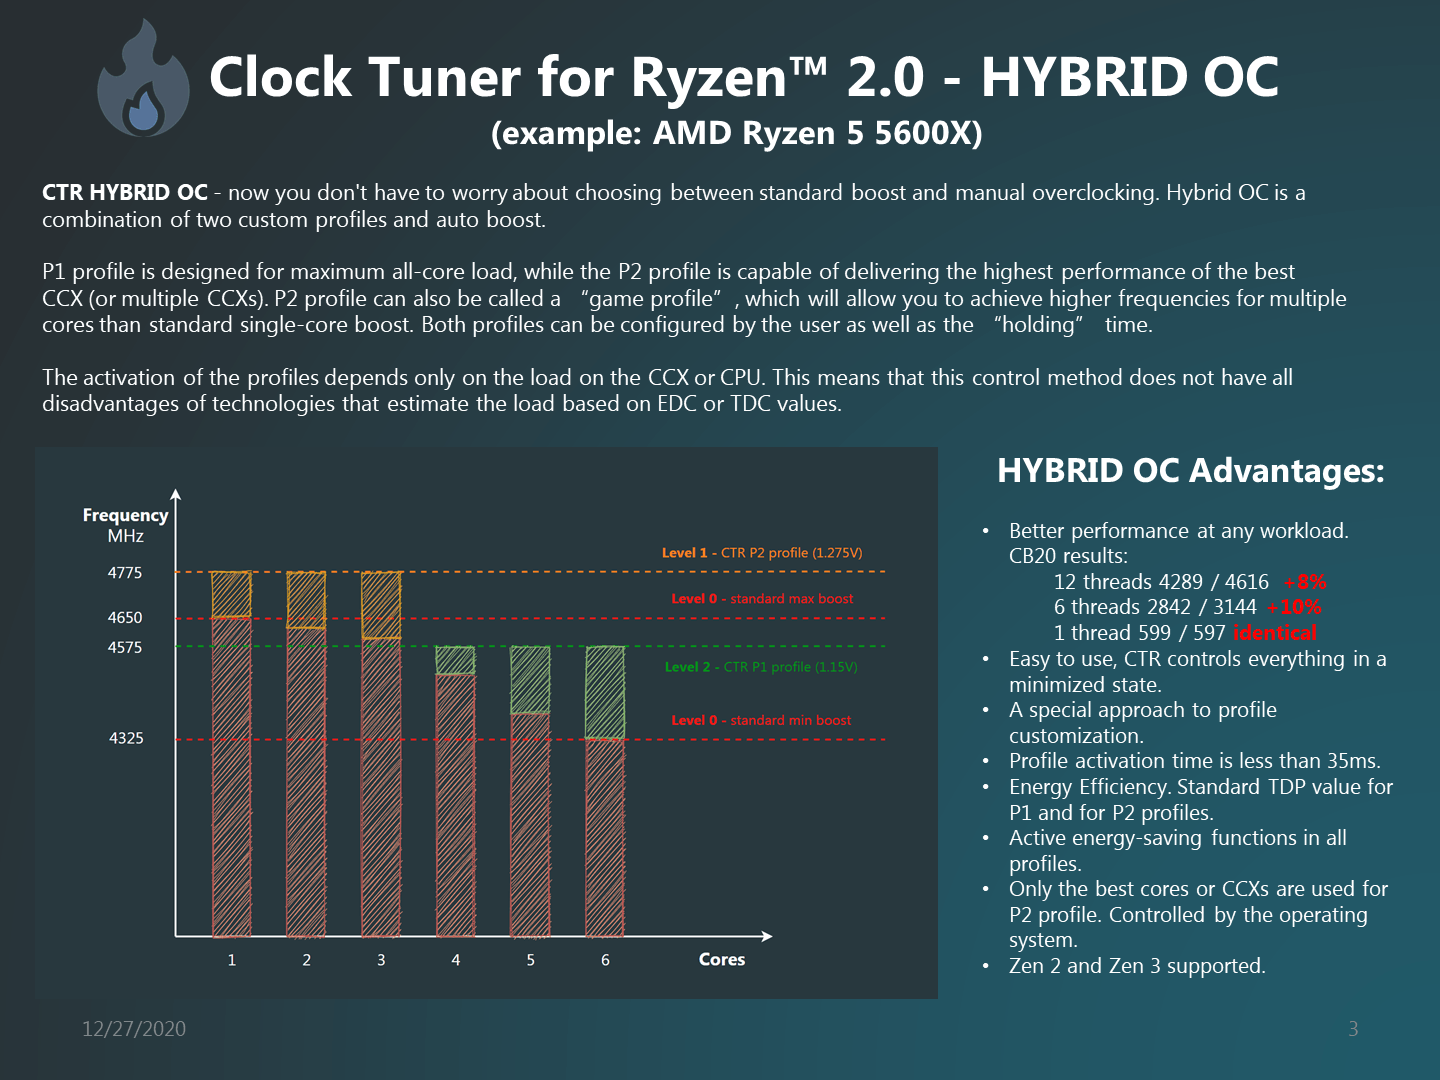 Clock-Tuner-For-Ryzen-2.0-4.png